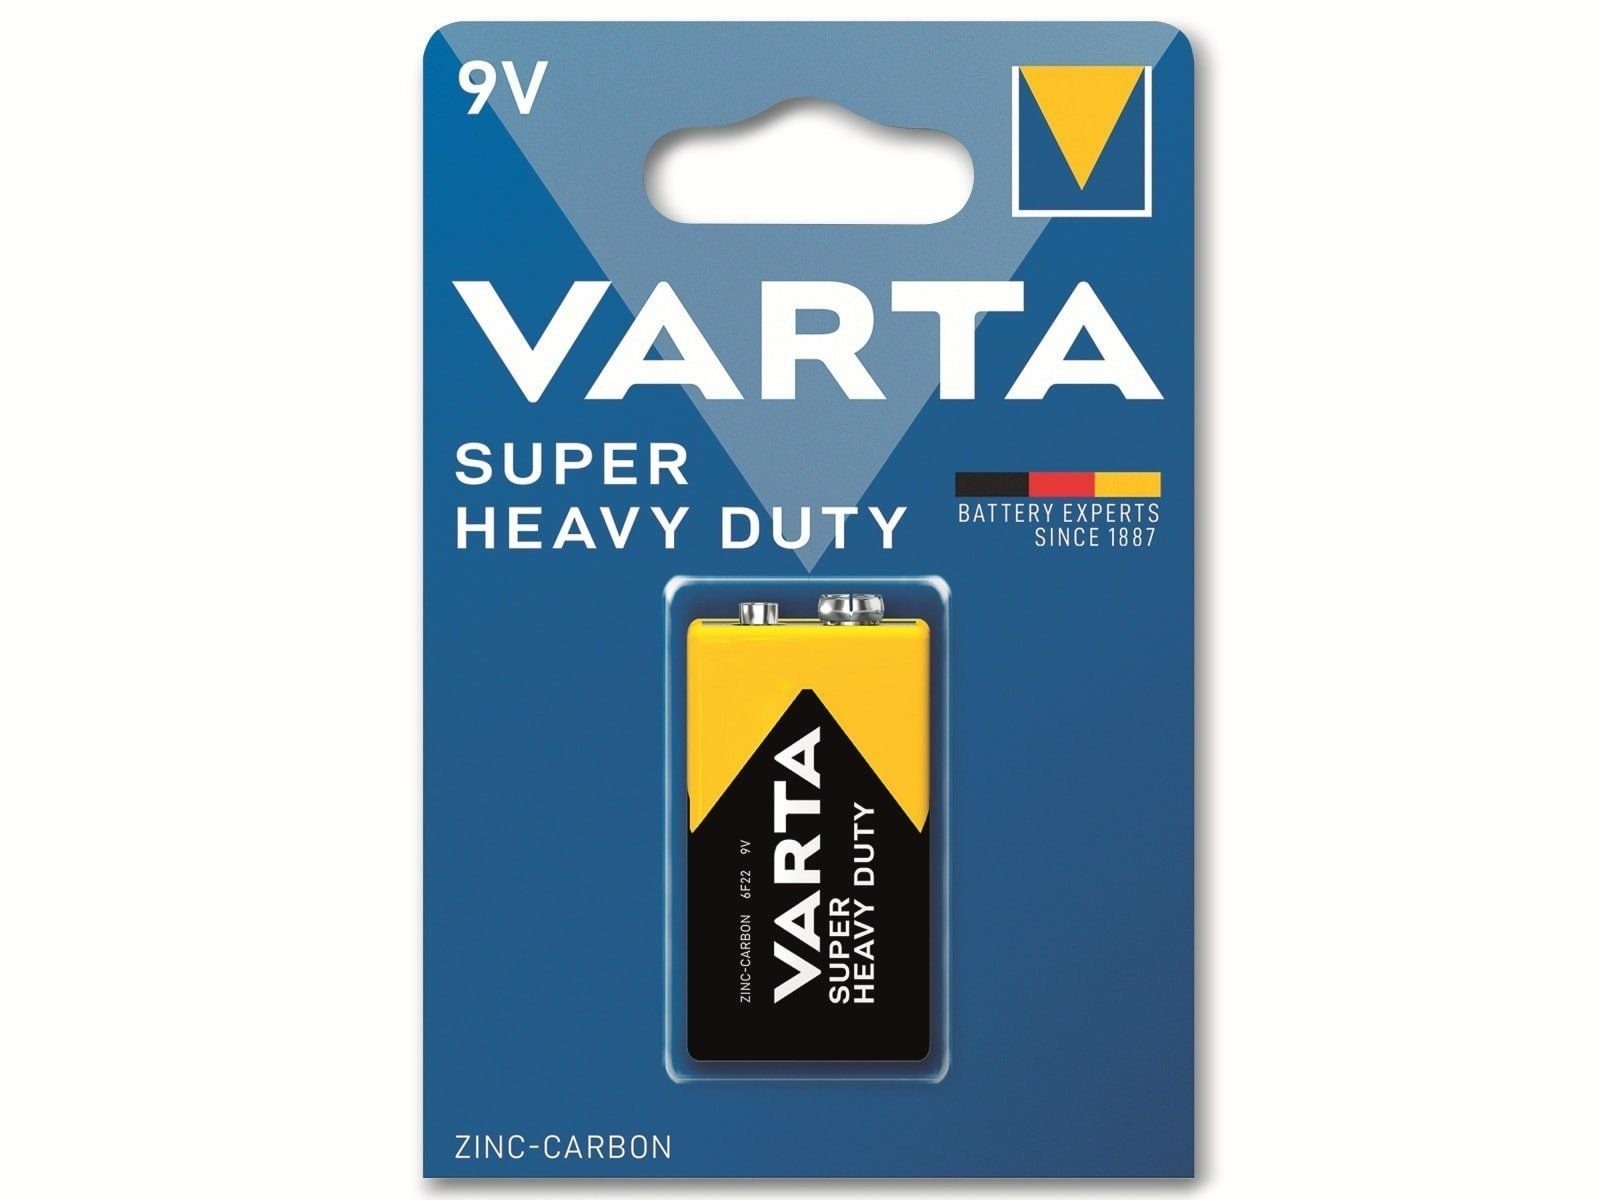 VARTA VARTA Batterie Zink-Kohle, E-Block, 6F22, 9V Batterie